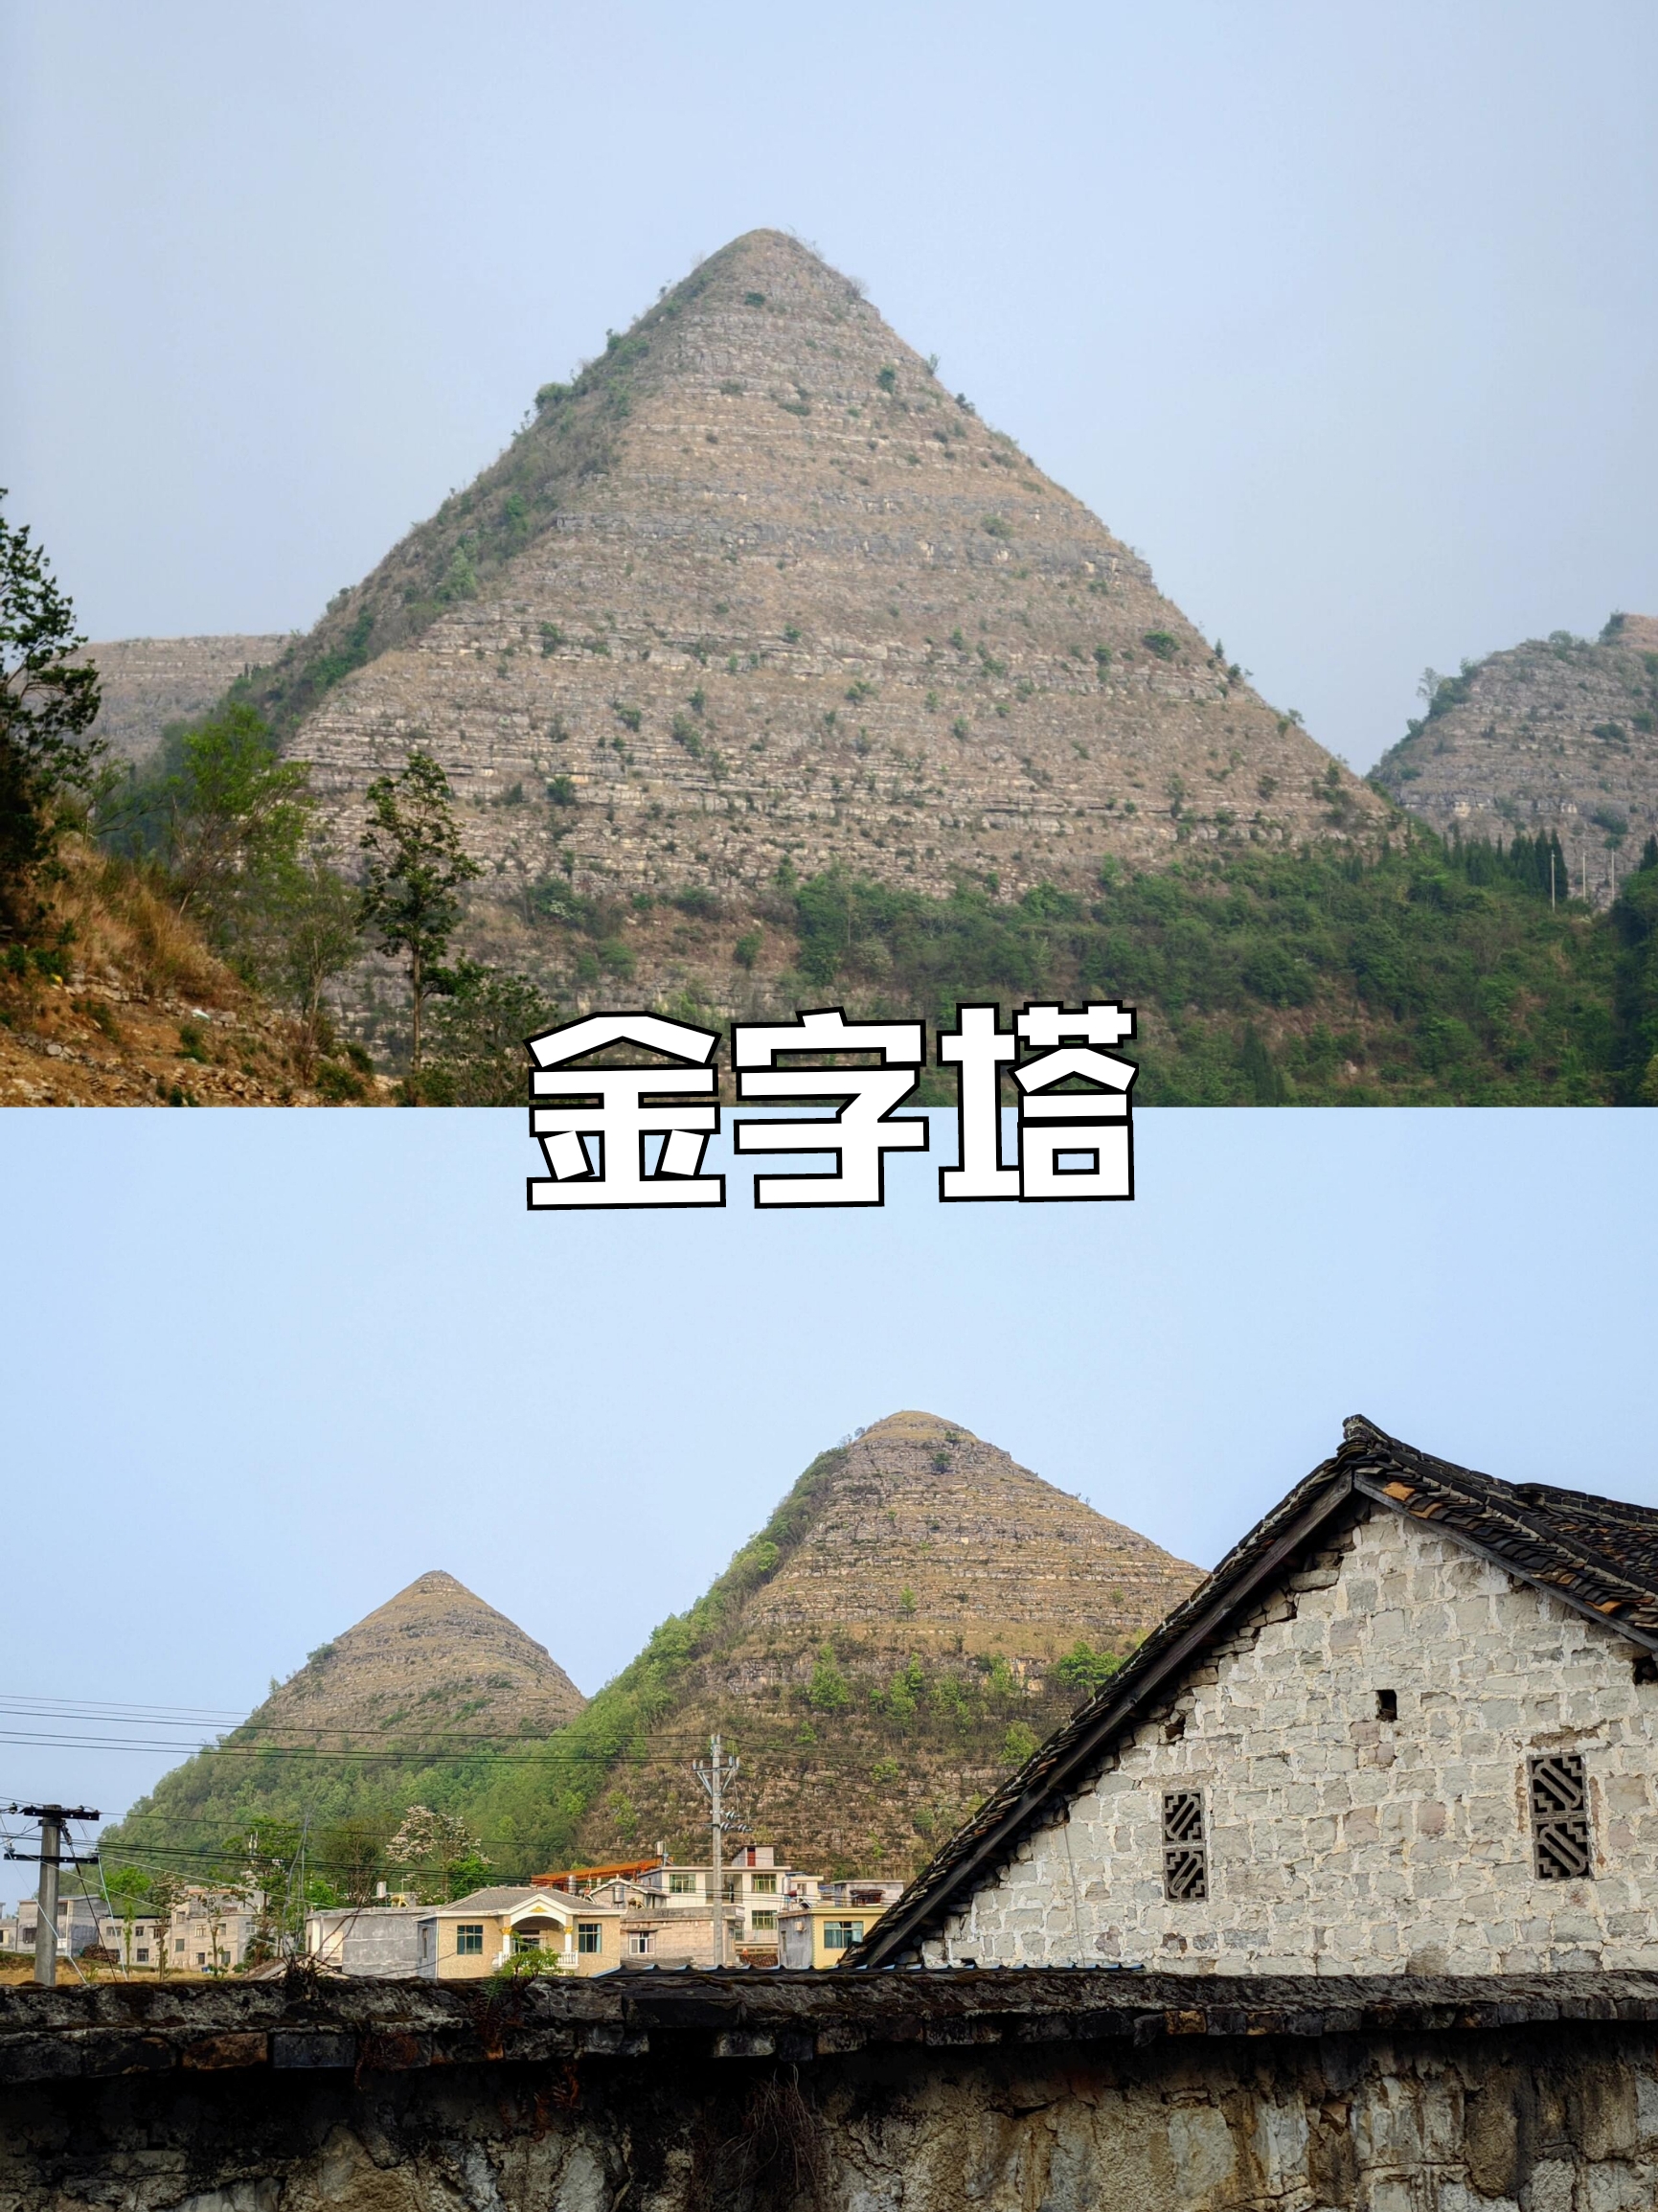 属于中国人的安龙金字塔-大火出塔